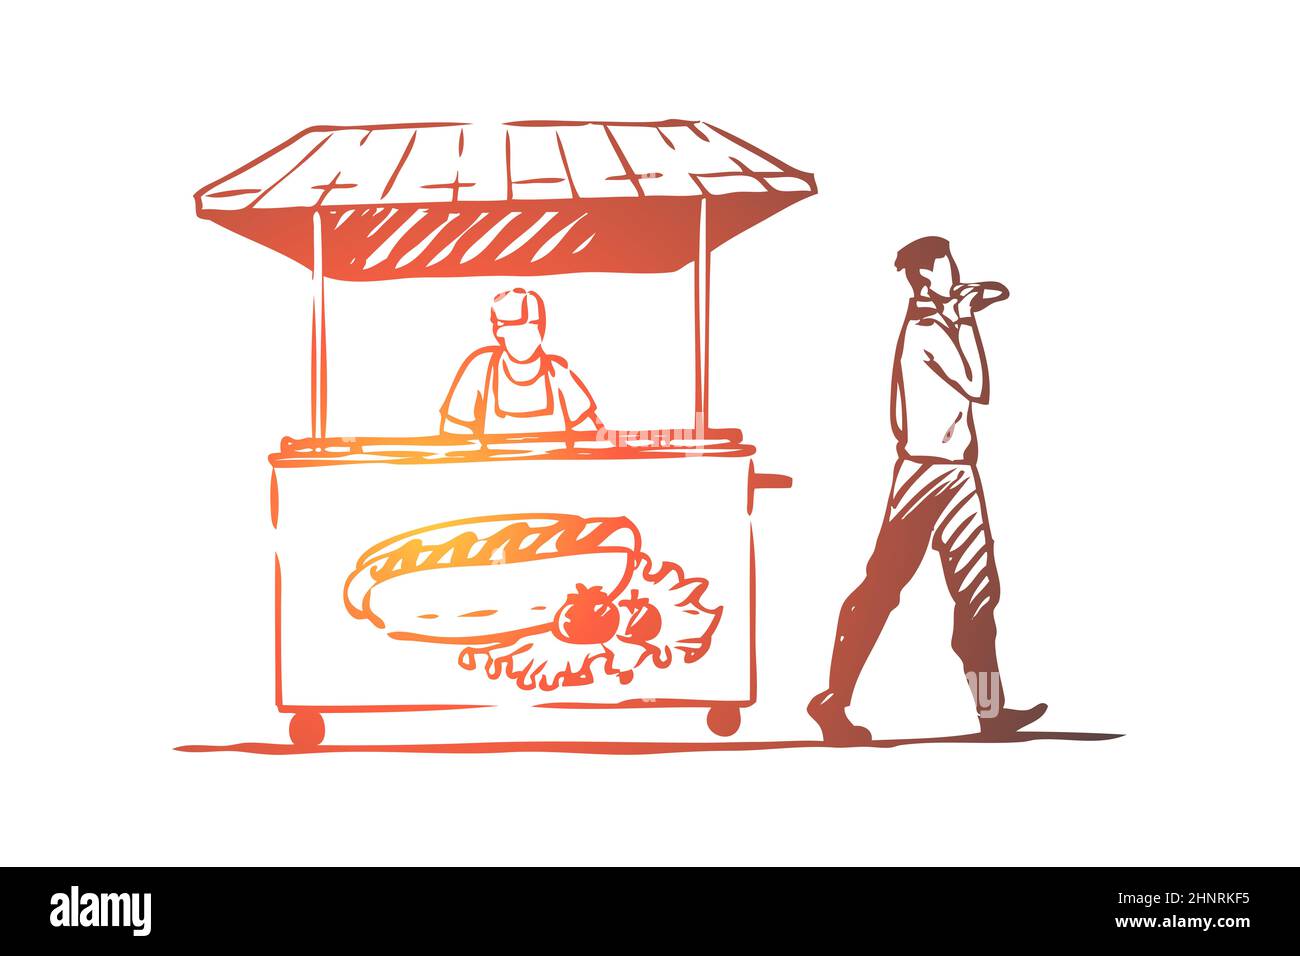 Hot dog, fast food, chiosco, Street concept. Uomo disegnato a mano che mangia hot dog nello schizzo di concetto di strada. Illustrazione vettoriale isolata. Foto Stock